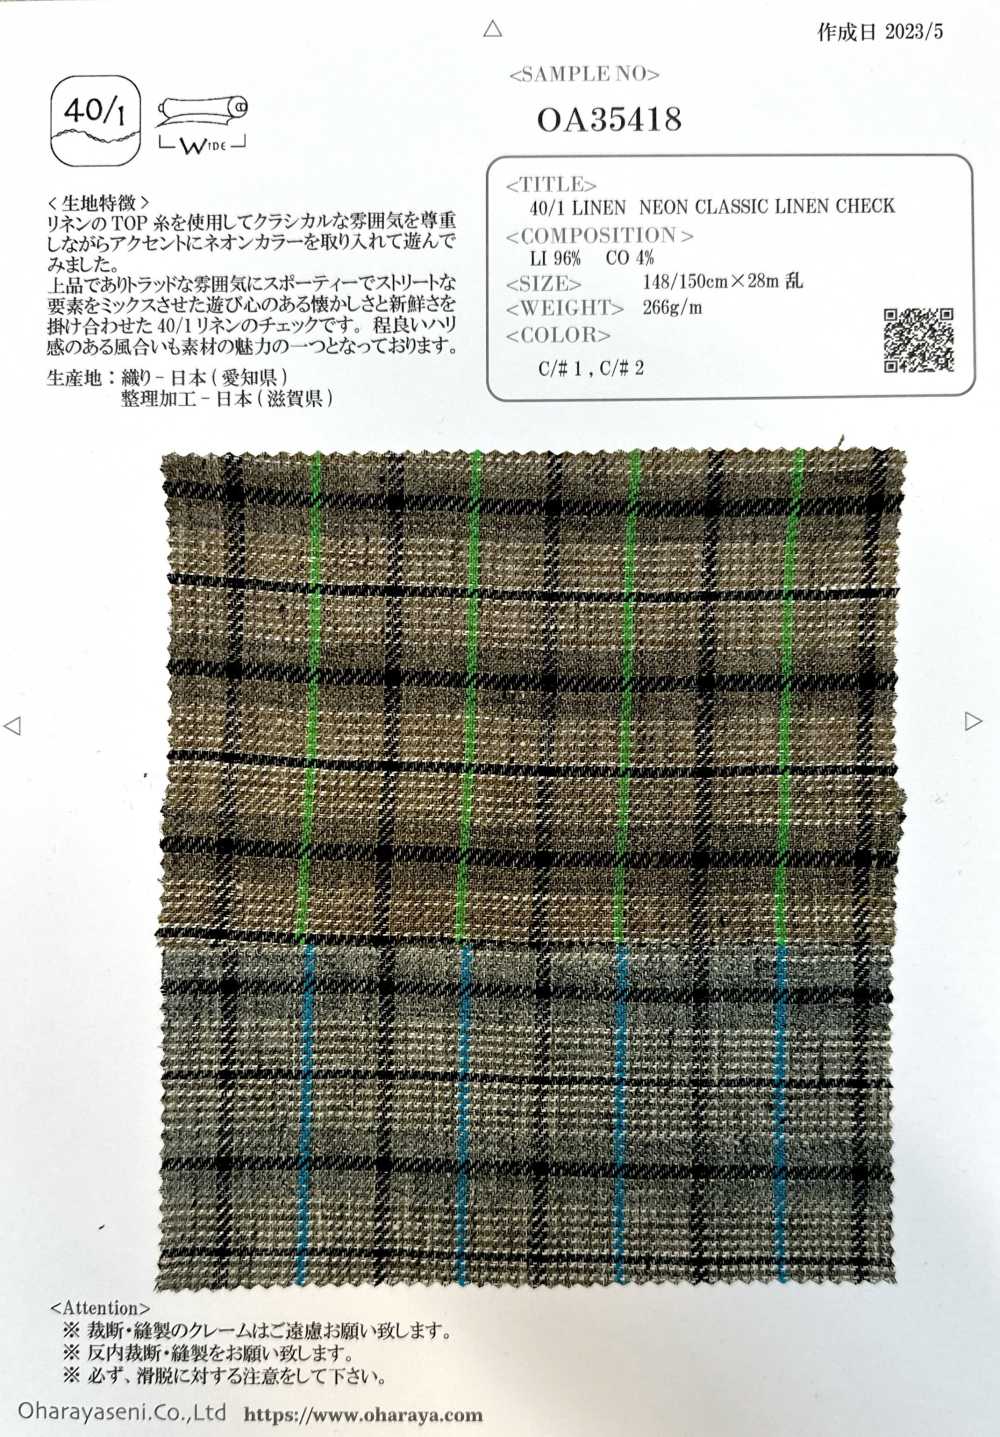 OA35418 40/1 LINO NEON LINO CLÁSICO CUADROS[Fabrica Textil] Oharayaseni